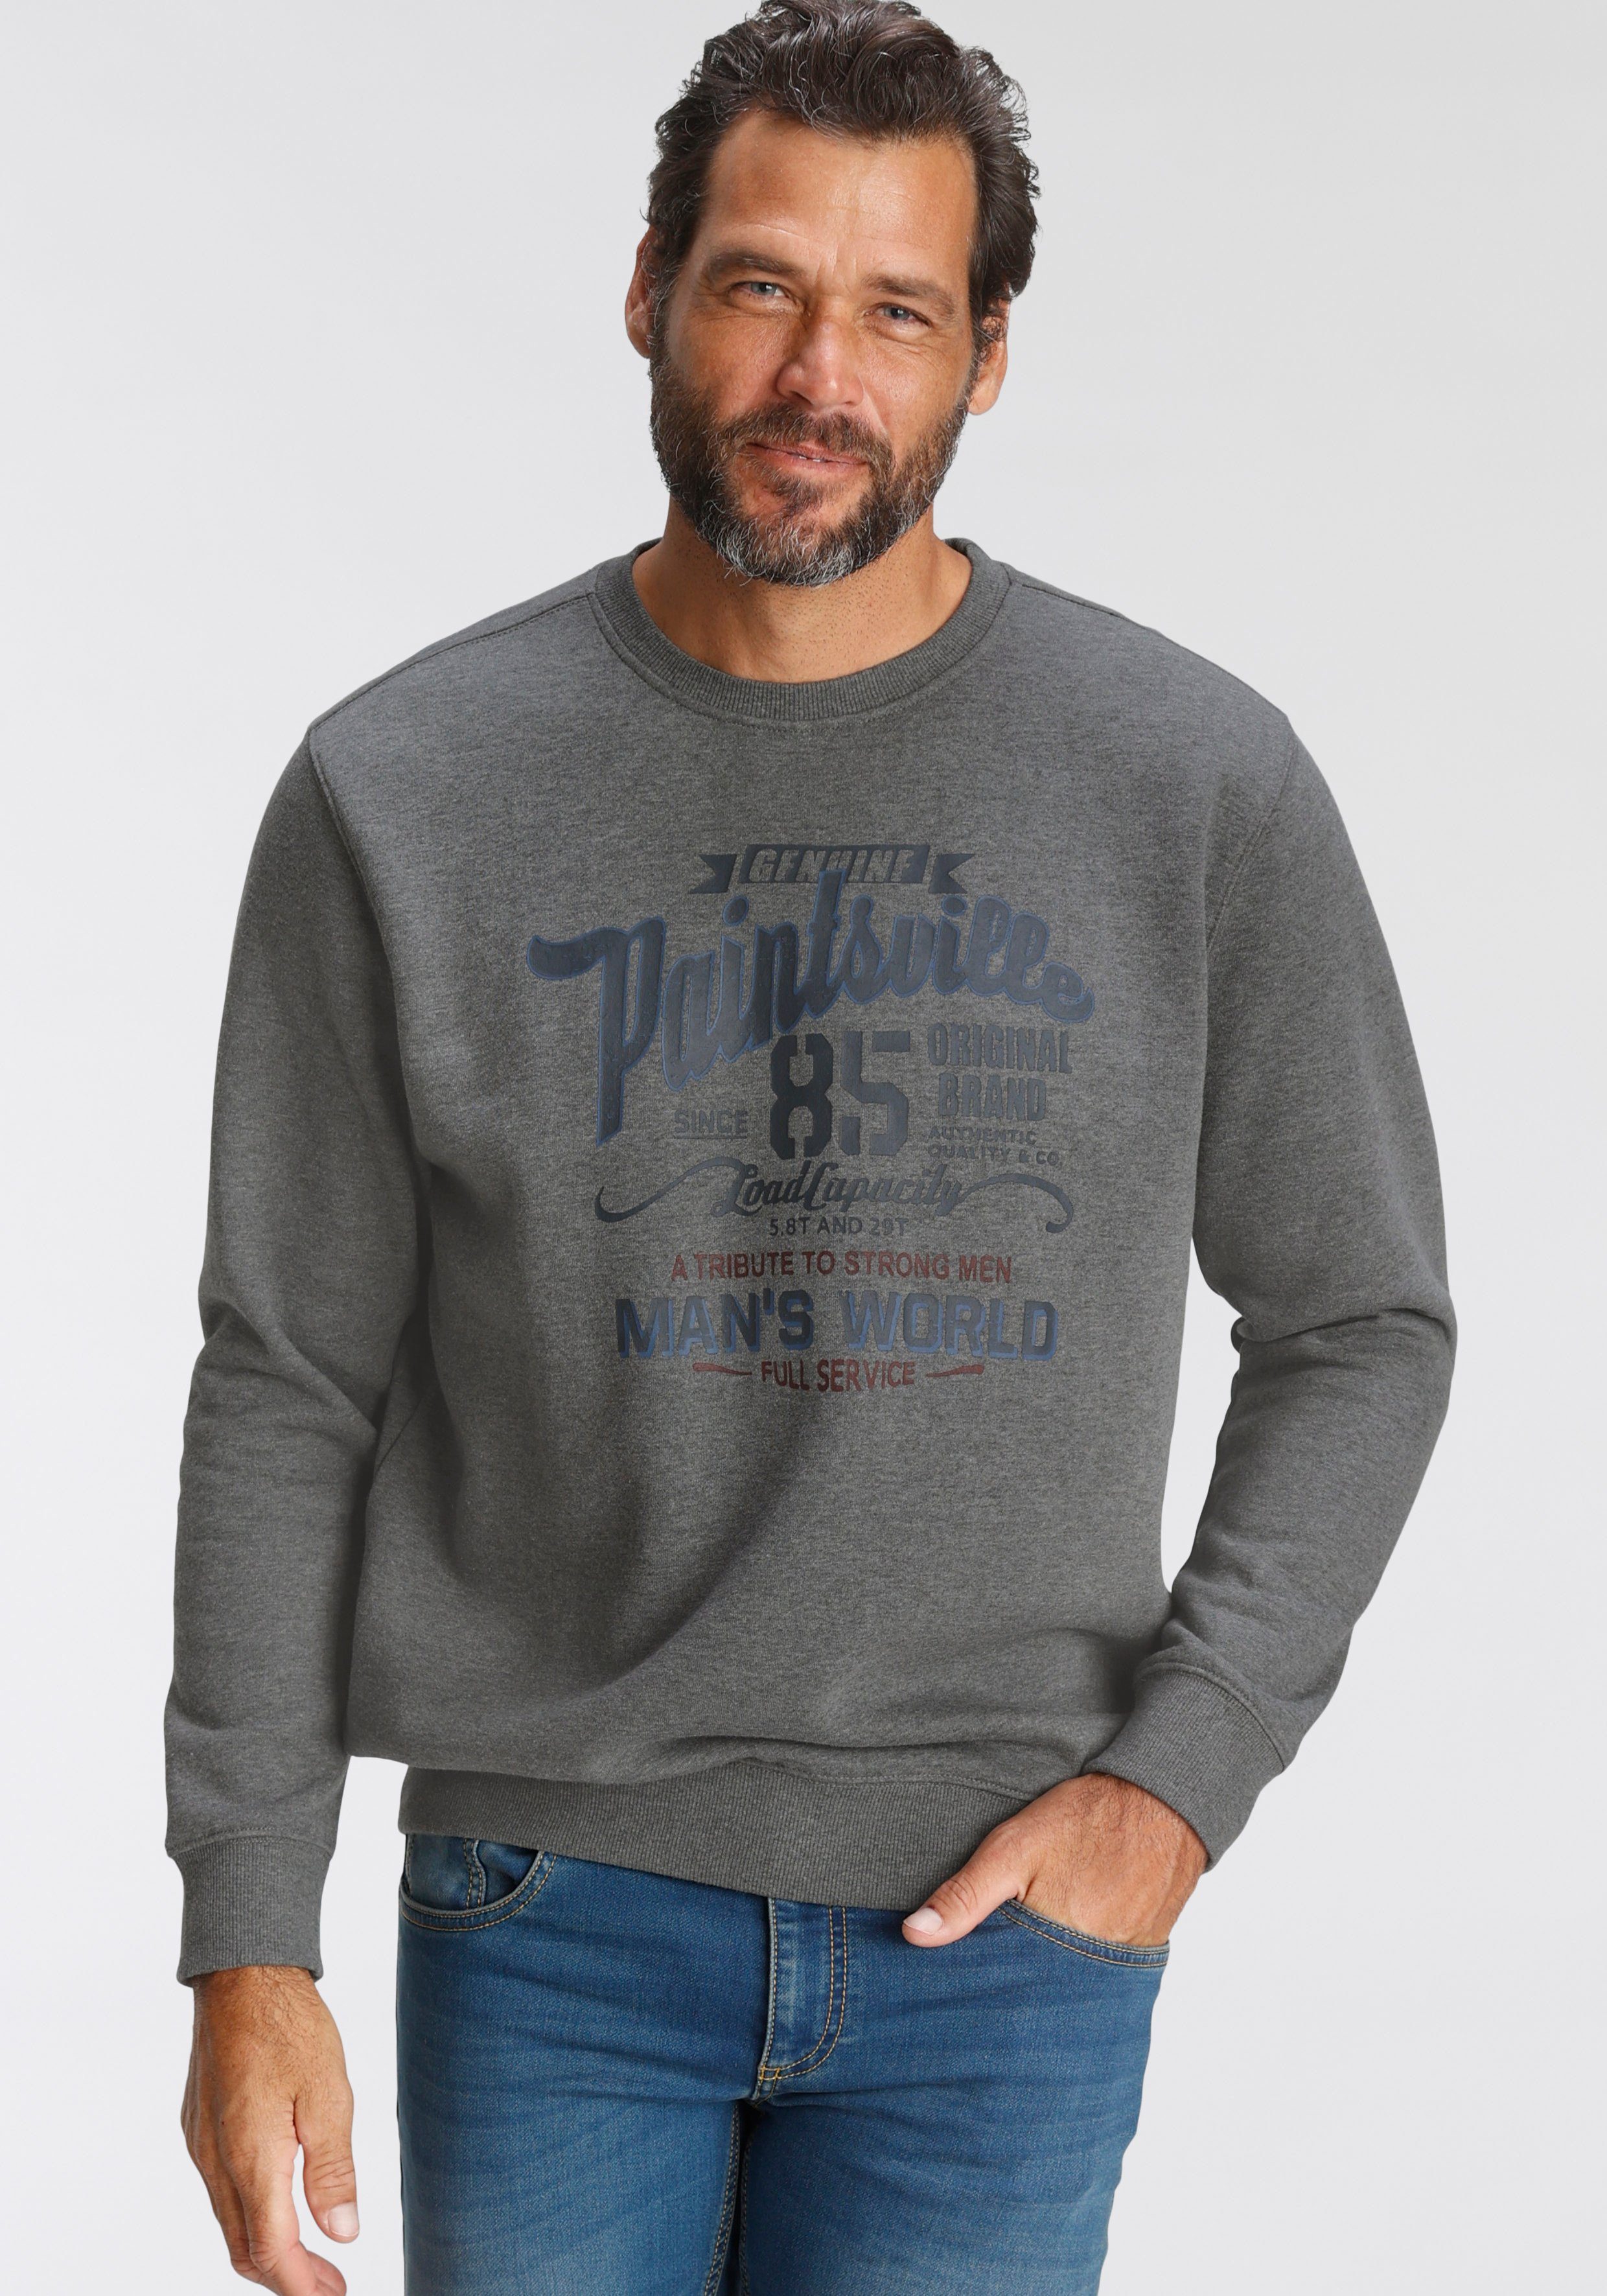 man's world sweatshirt met borstprint grijs